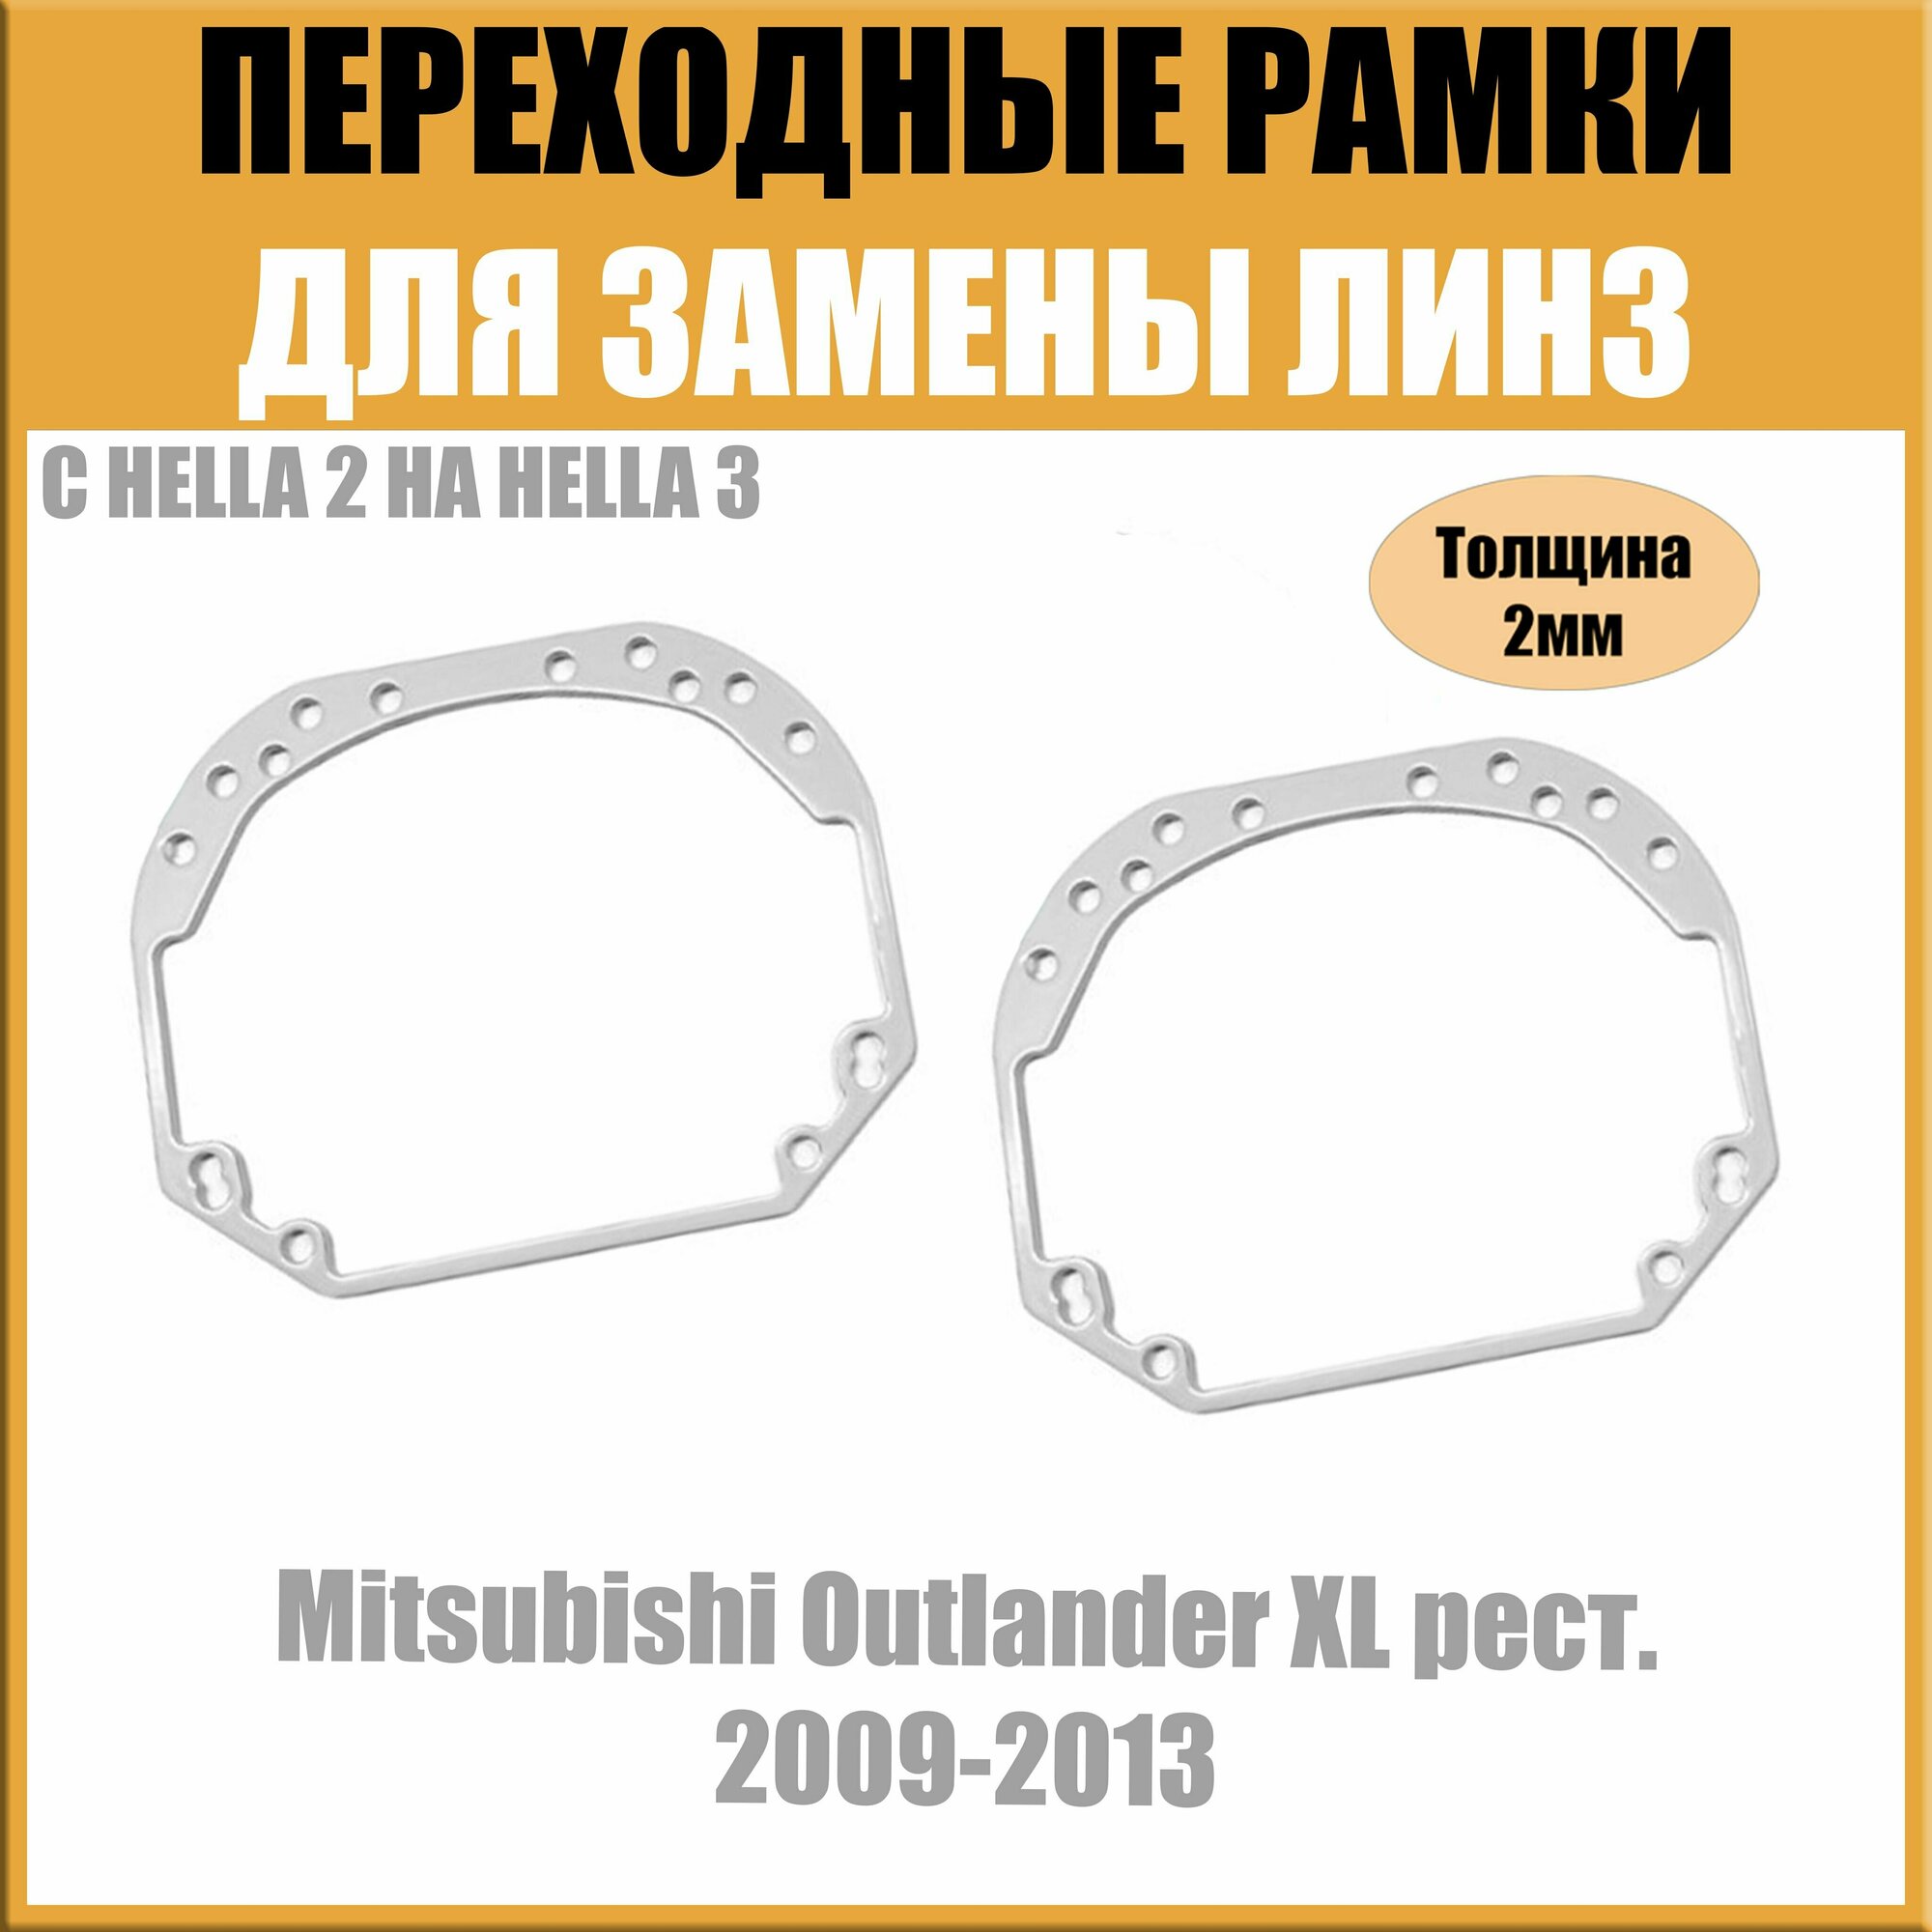 Переходные рамки для линз №1 на Mitsubishi Outlander XL рест. 2009-2013 под модуль Hella 3R/Hella 3 (Комплект, 2шт)